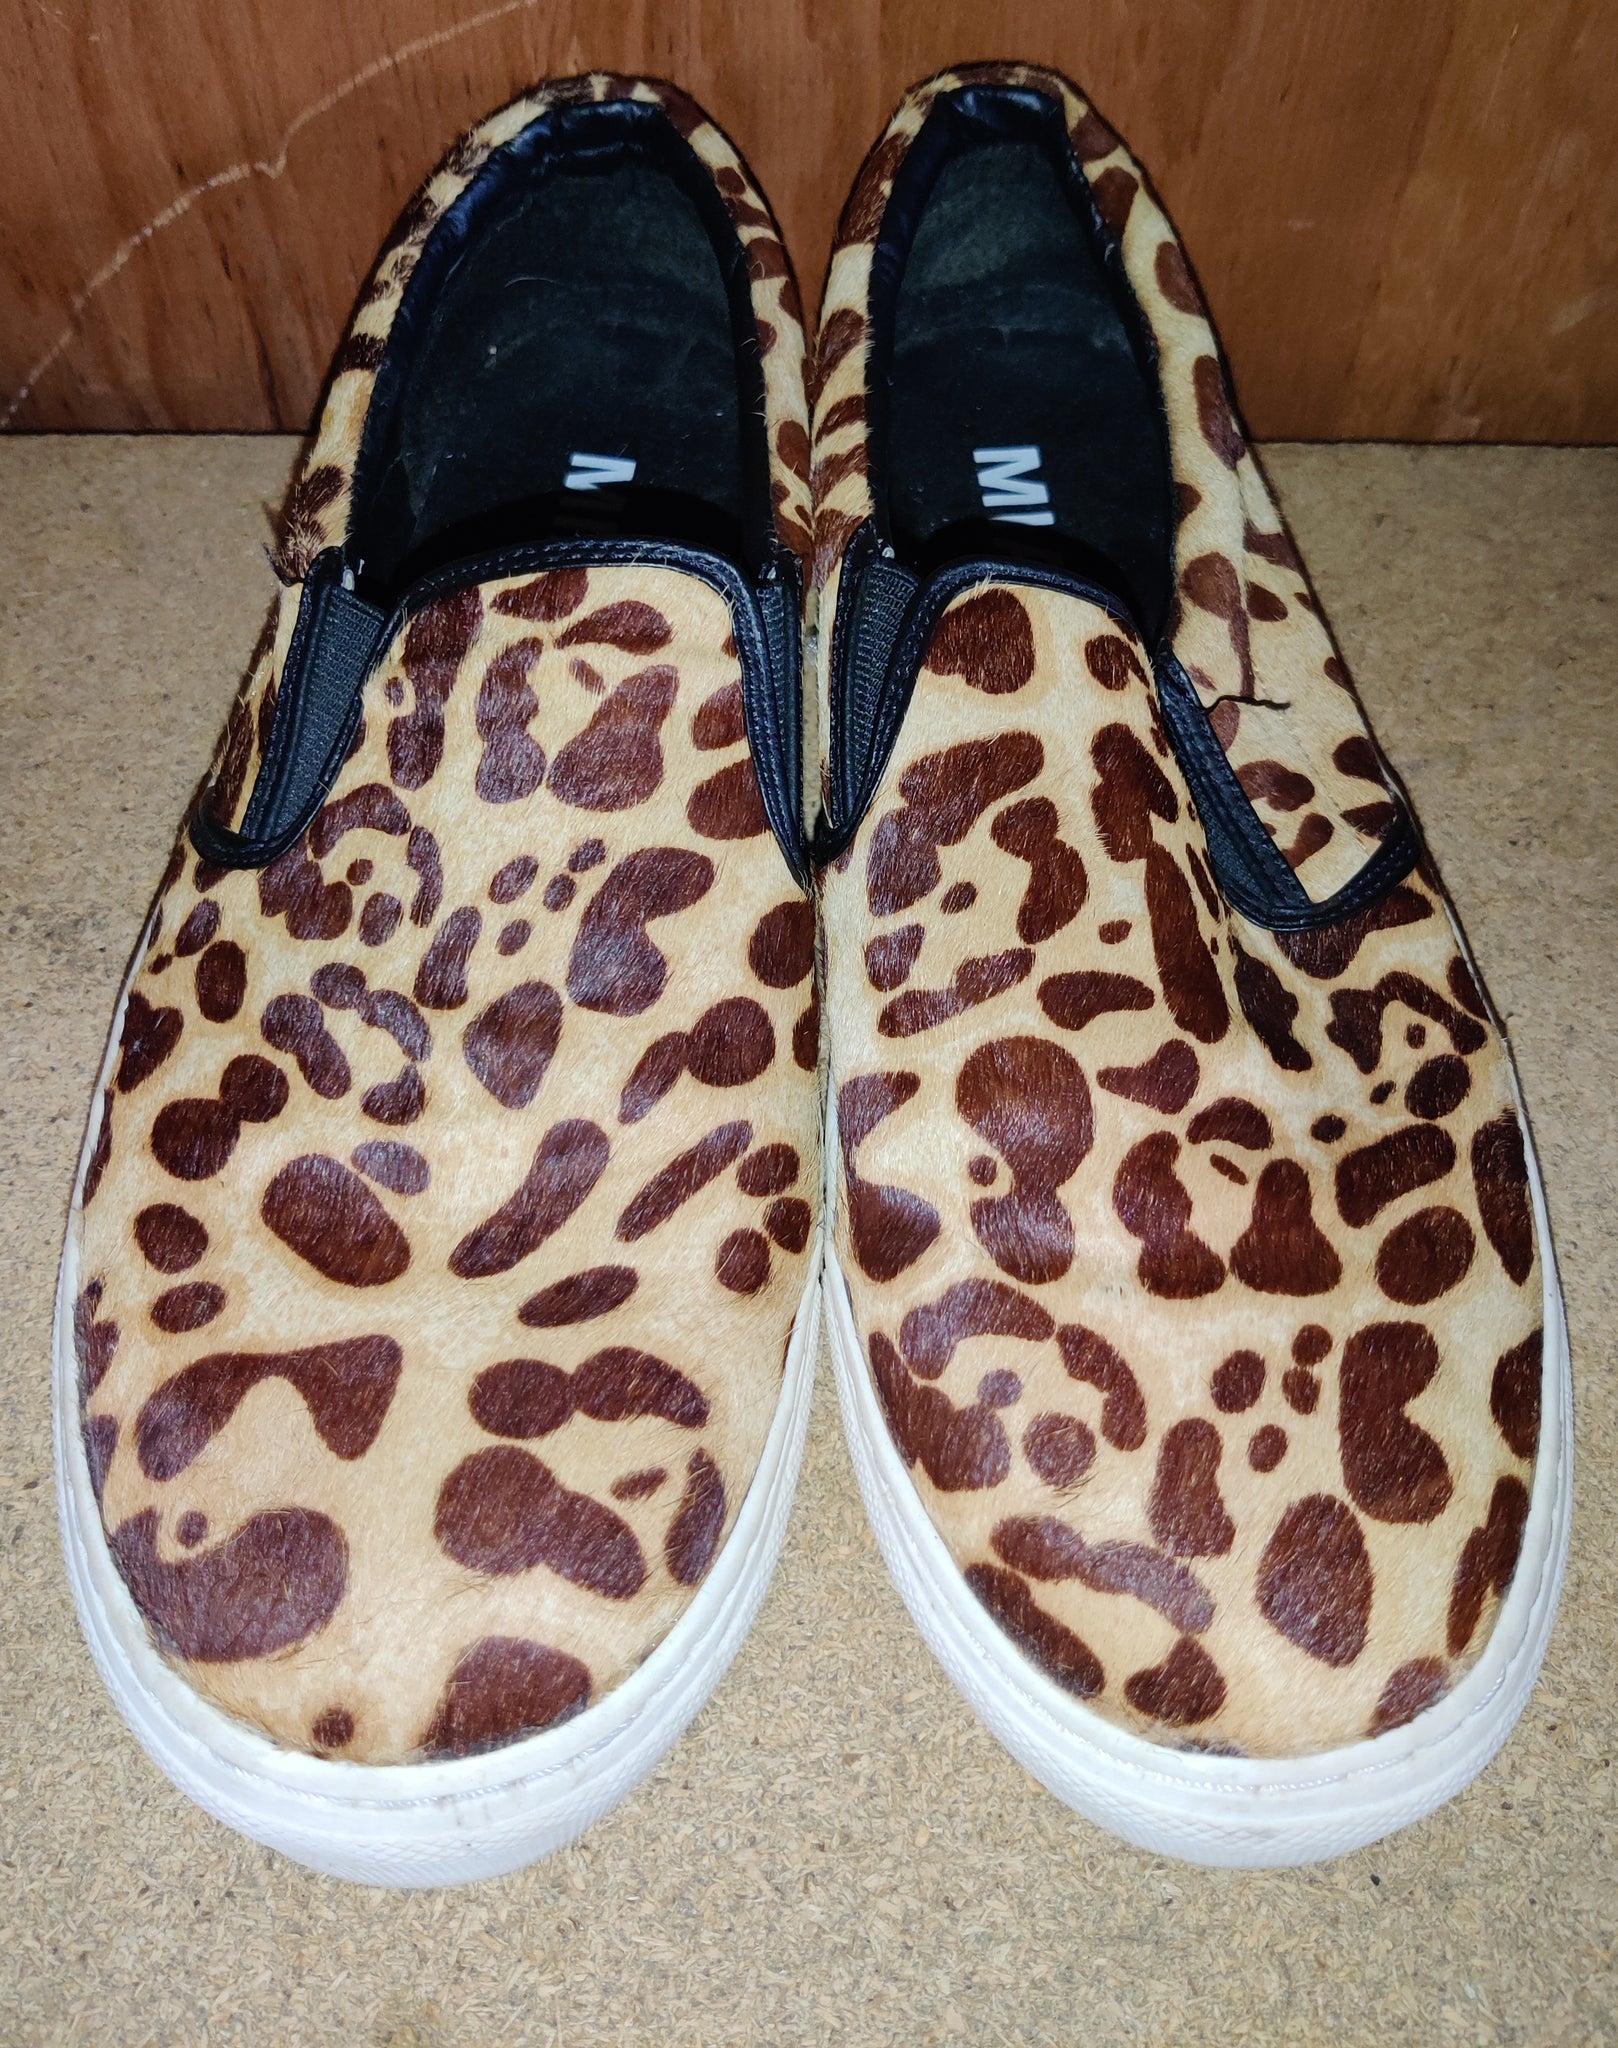 Women's Size 10 Faux Fur MIA Leopard Print Flat Walking Sneaker Shoes